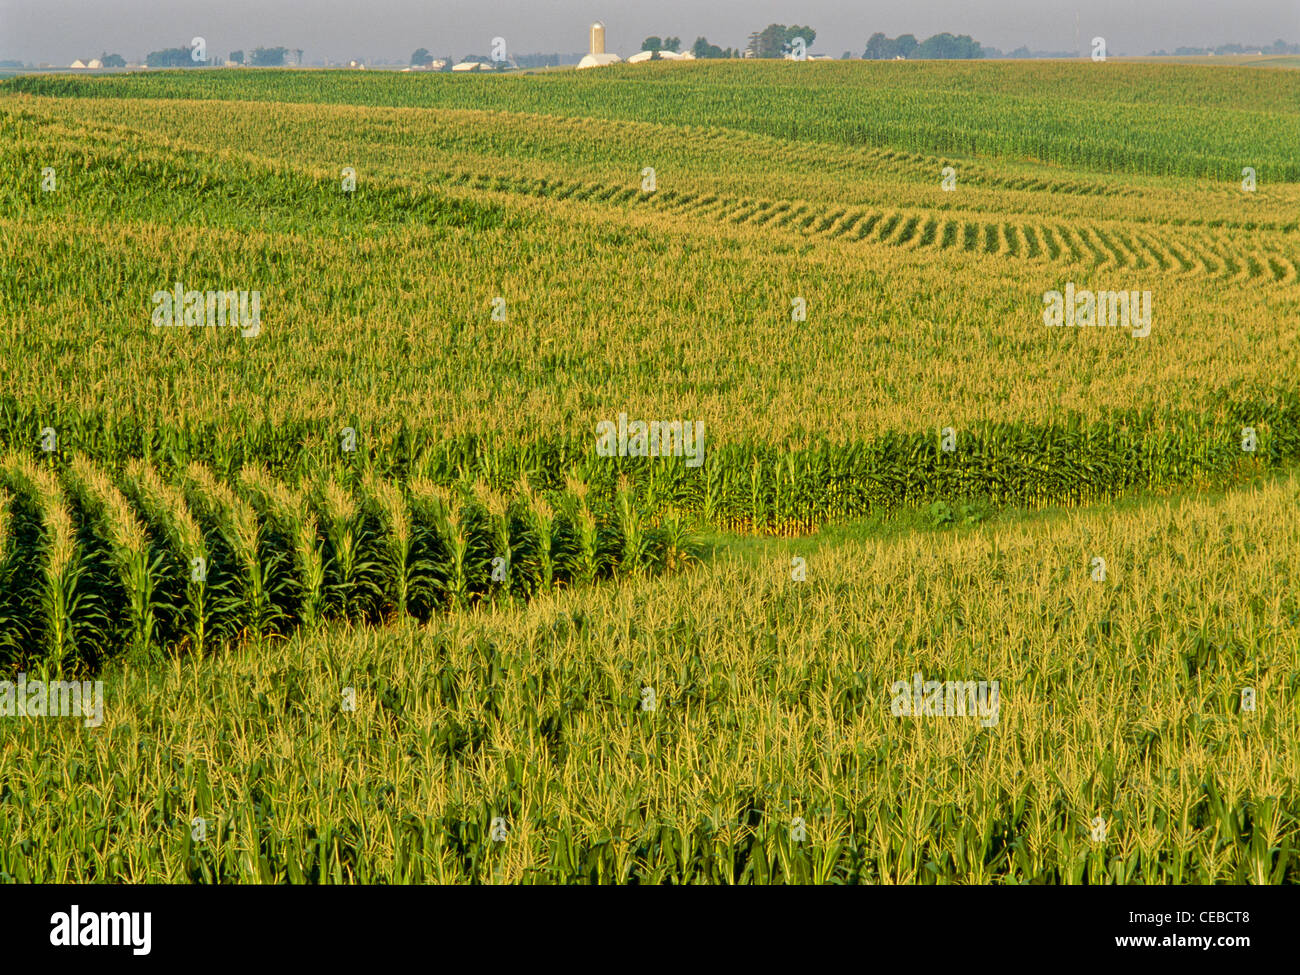 Corn Fields in Iowa, USA Stock Photo